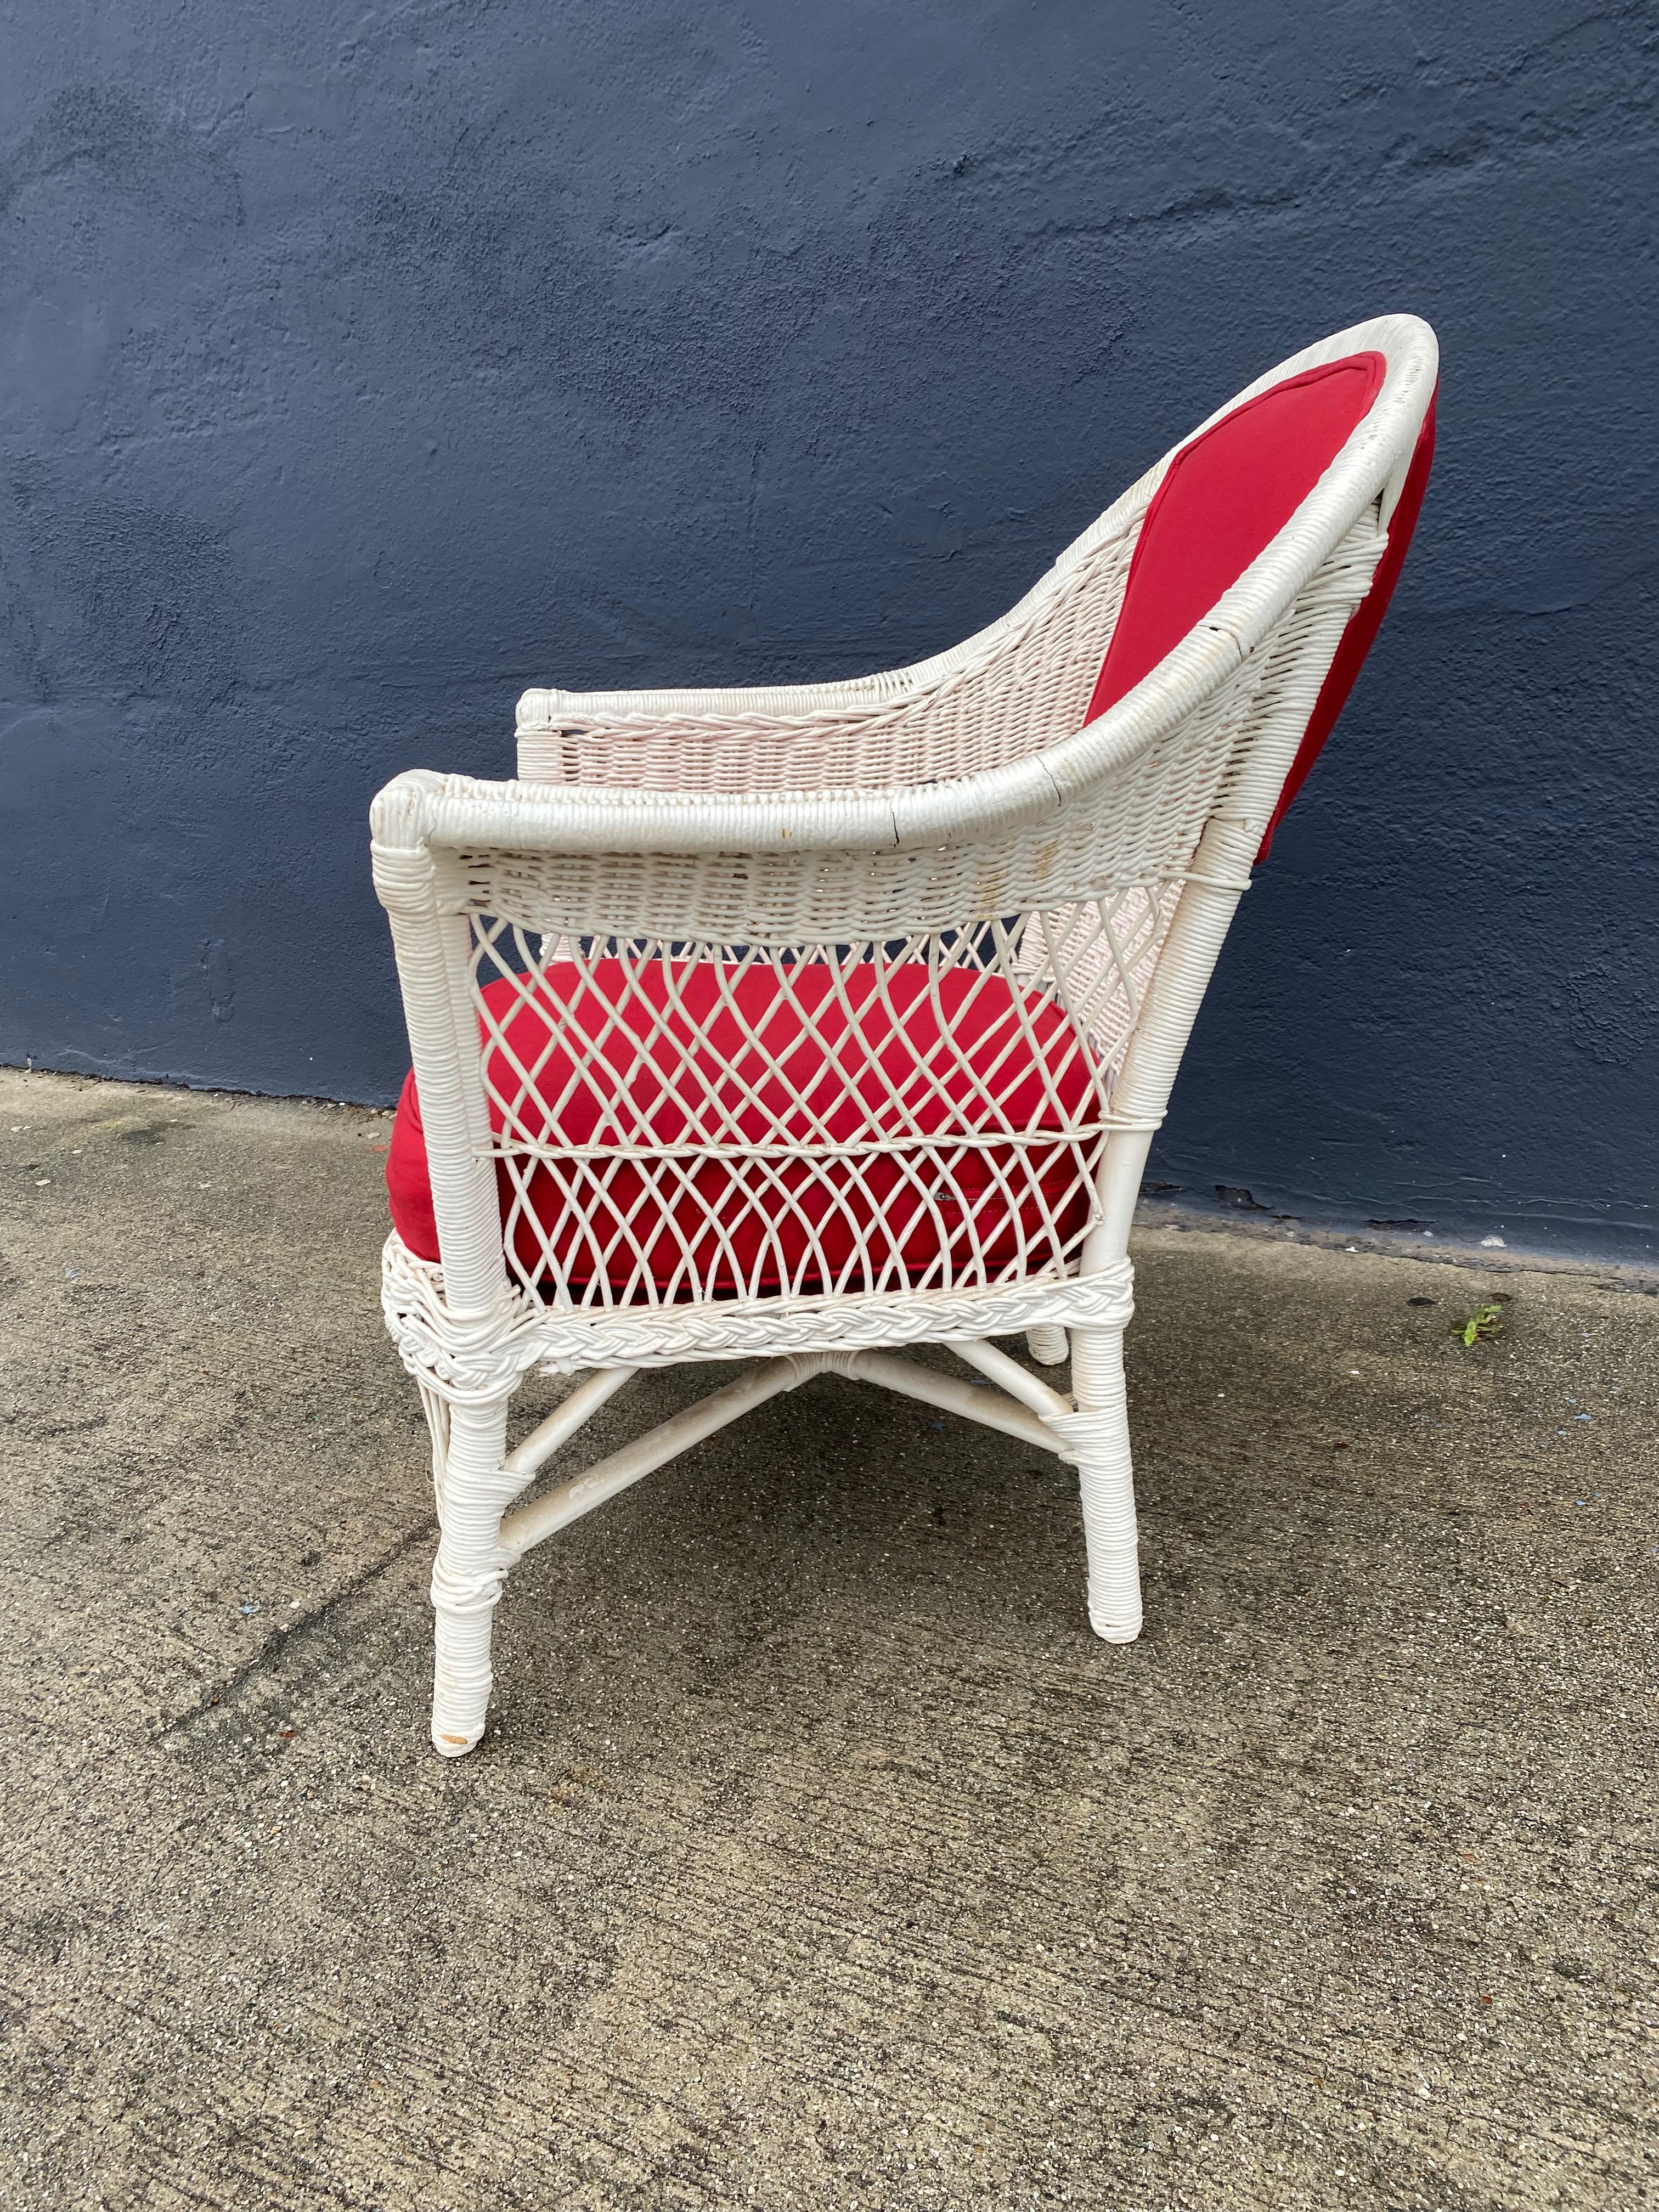 Il s'agit d'une chaise classique en osier de style Bar Harbor datant de la première moitié du XXe siècle. La chaise a été retapissée dans un tissu rouge cerise et repeinte à la fin du XXe siècle. La chaise est en très bon état ; la tapisserie, bien